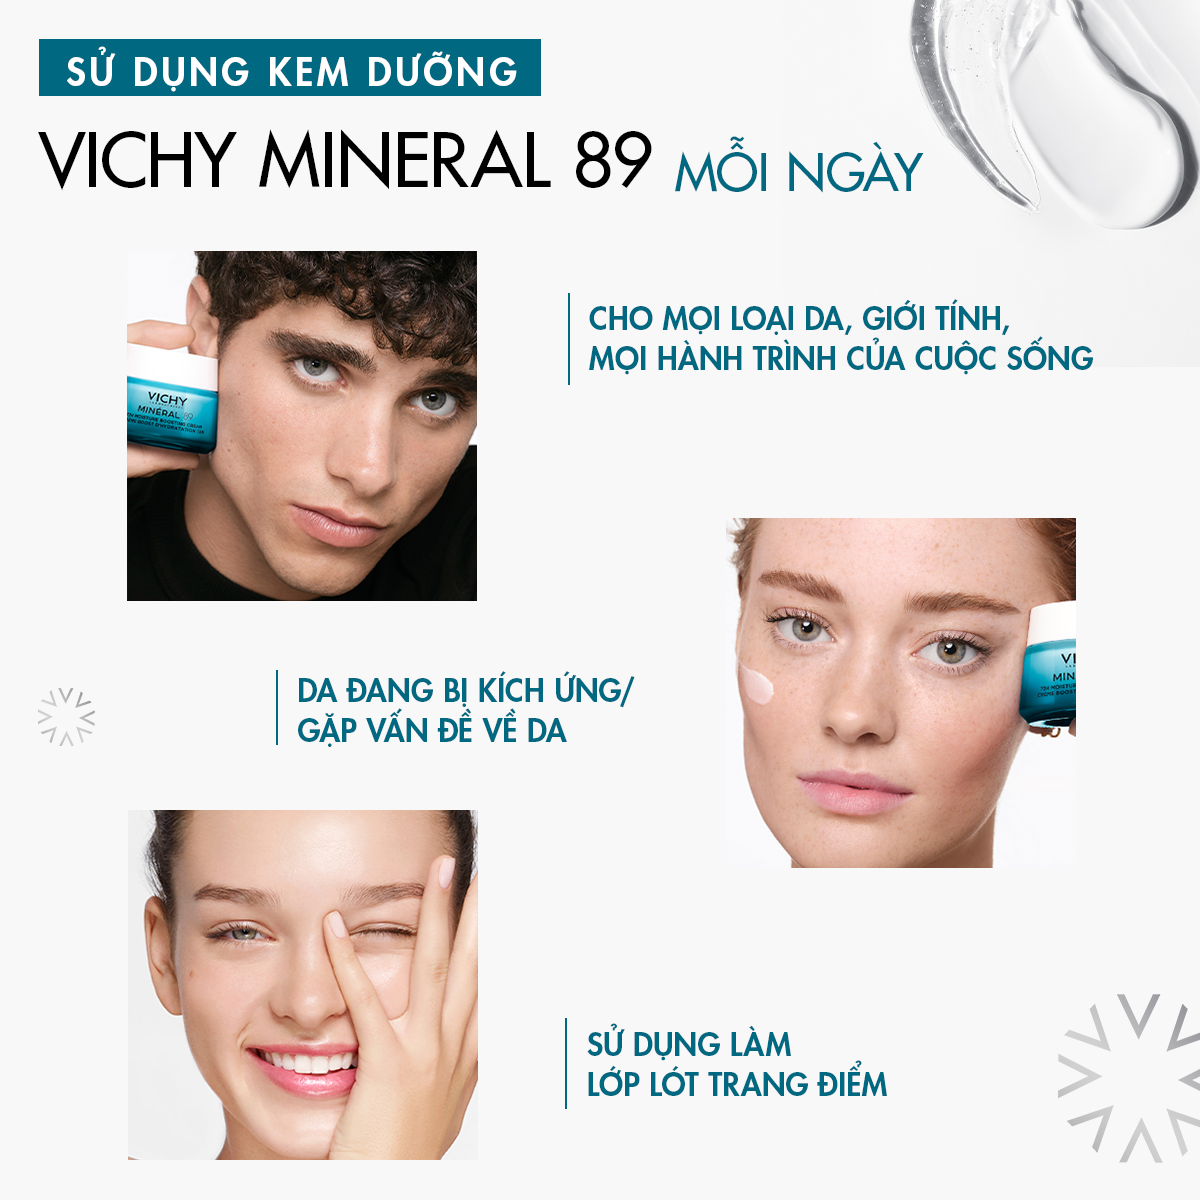 Kem dưỡng phục hồi chuyên sâu và dưỡng ẩm da đến 72h Vichy Mineral 89 50ml